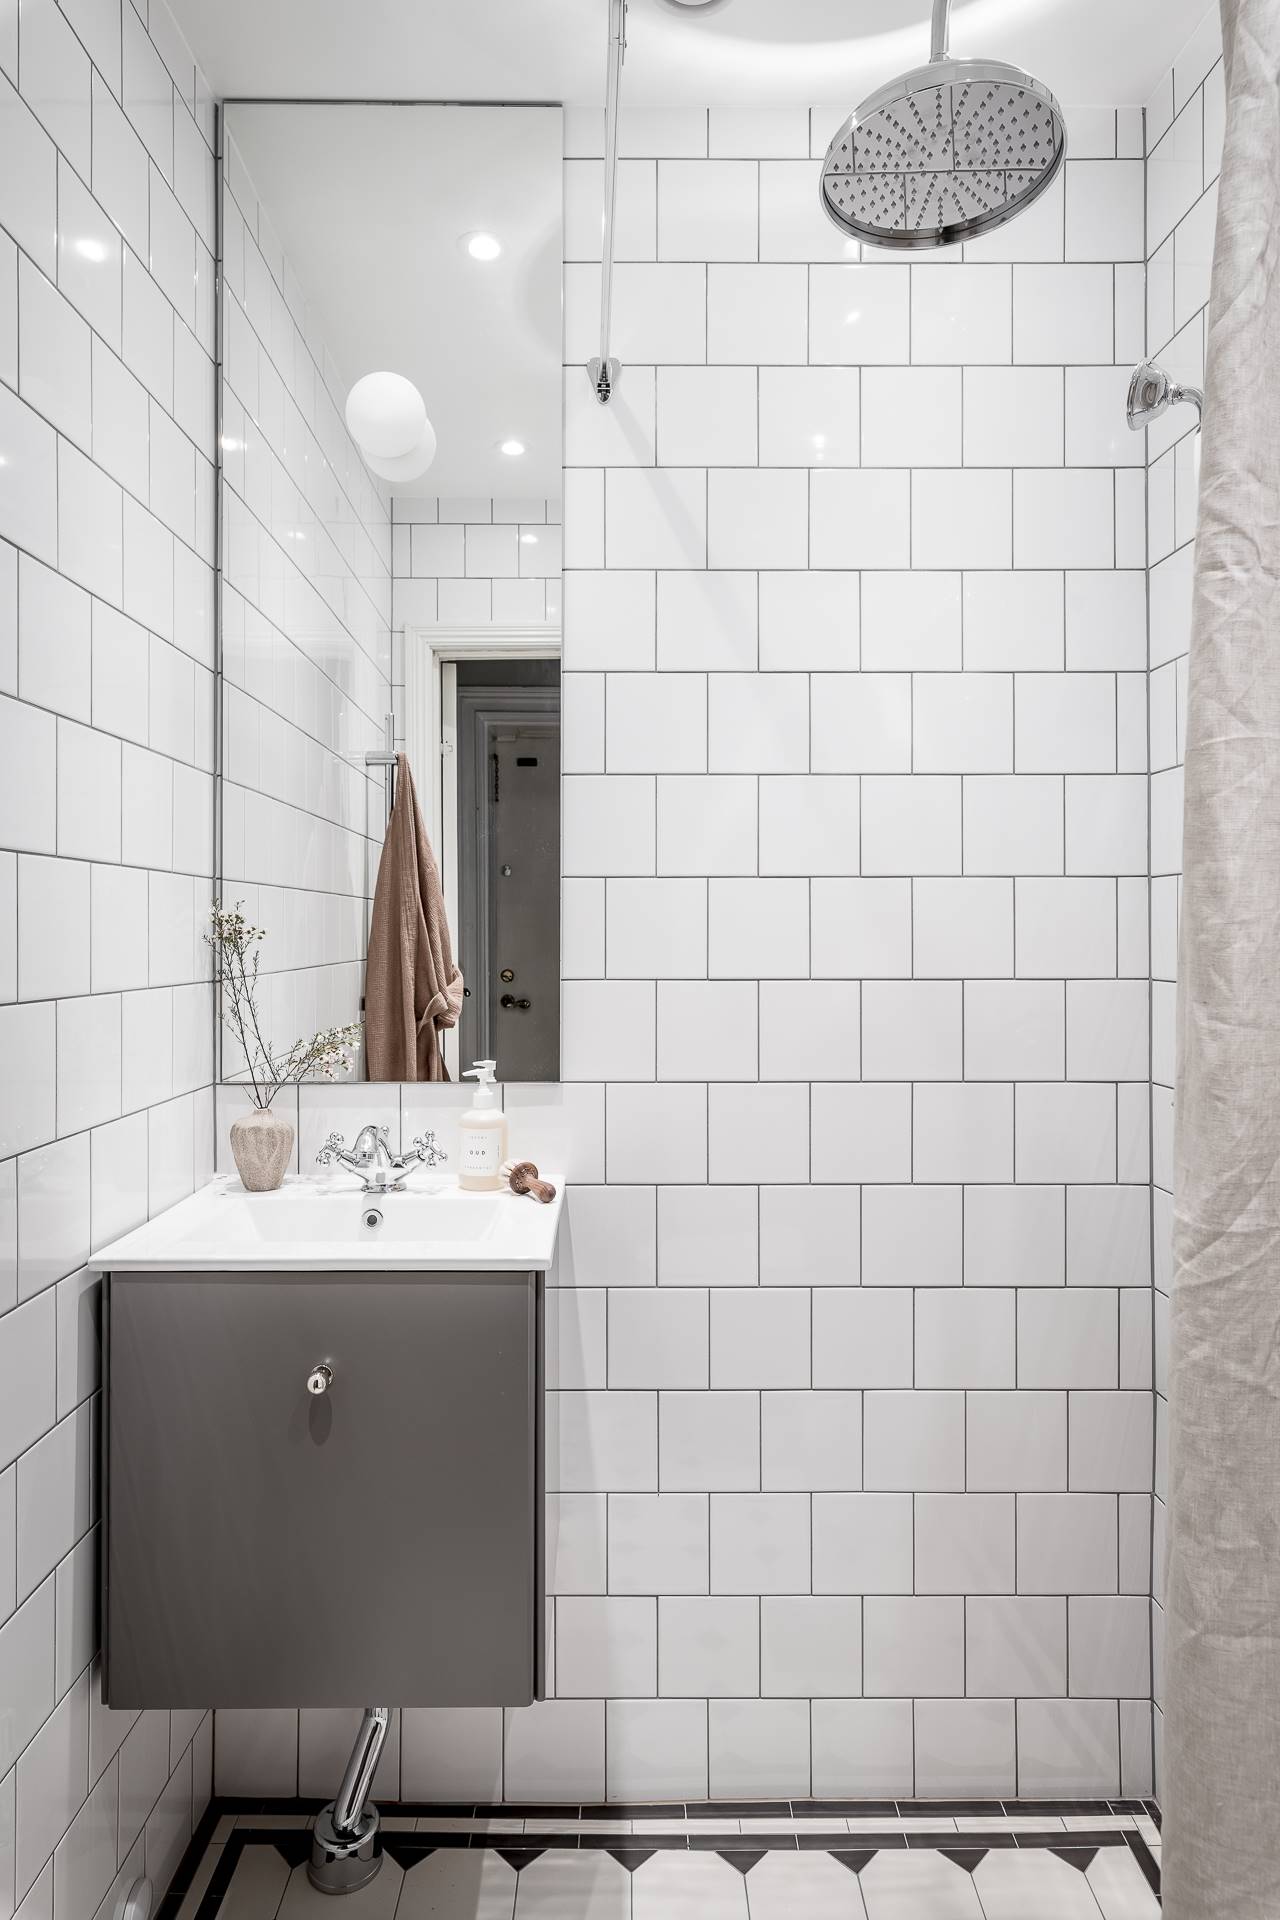 Baño pequeño de diseño nórdico decorado en blanco y gris